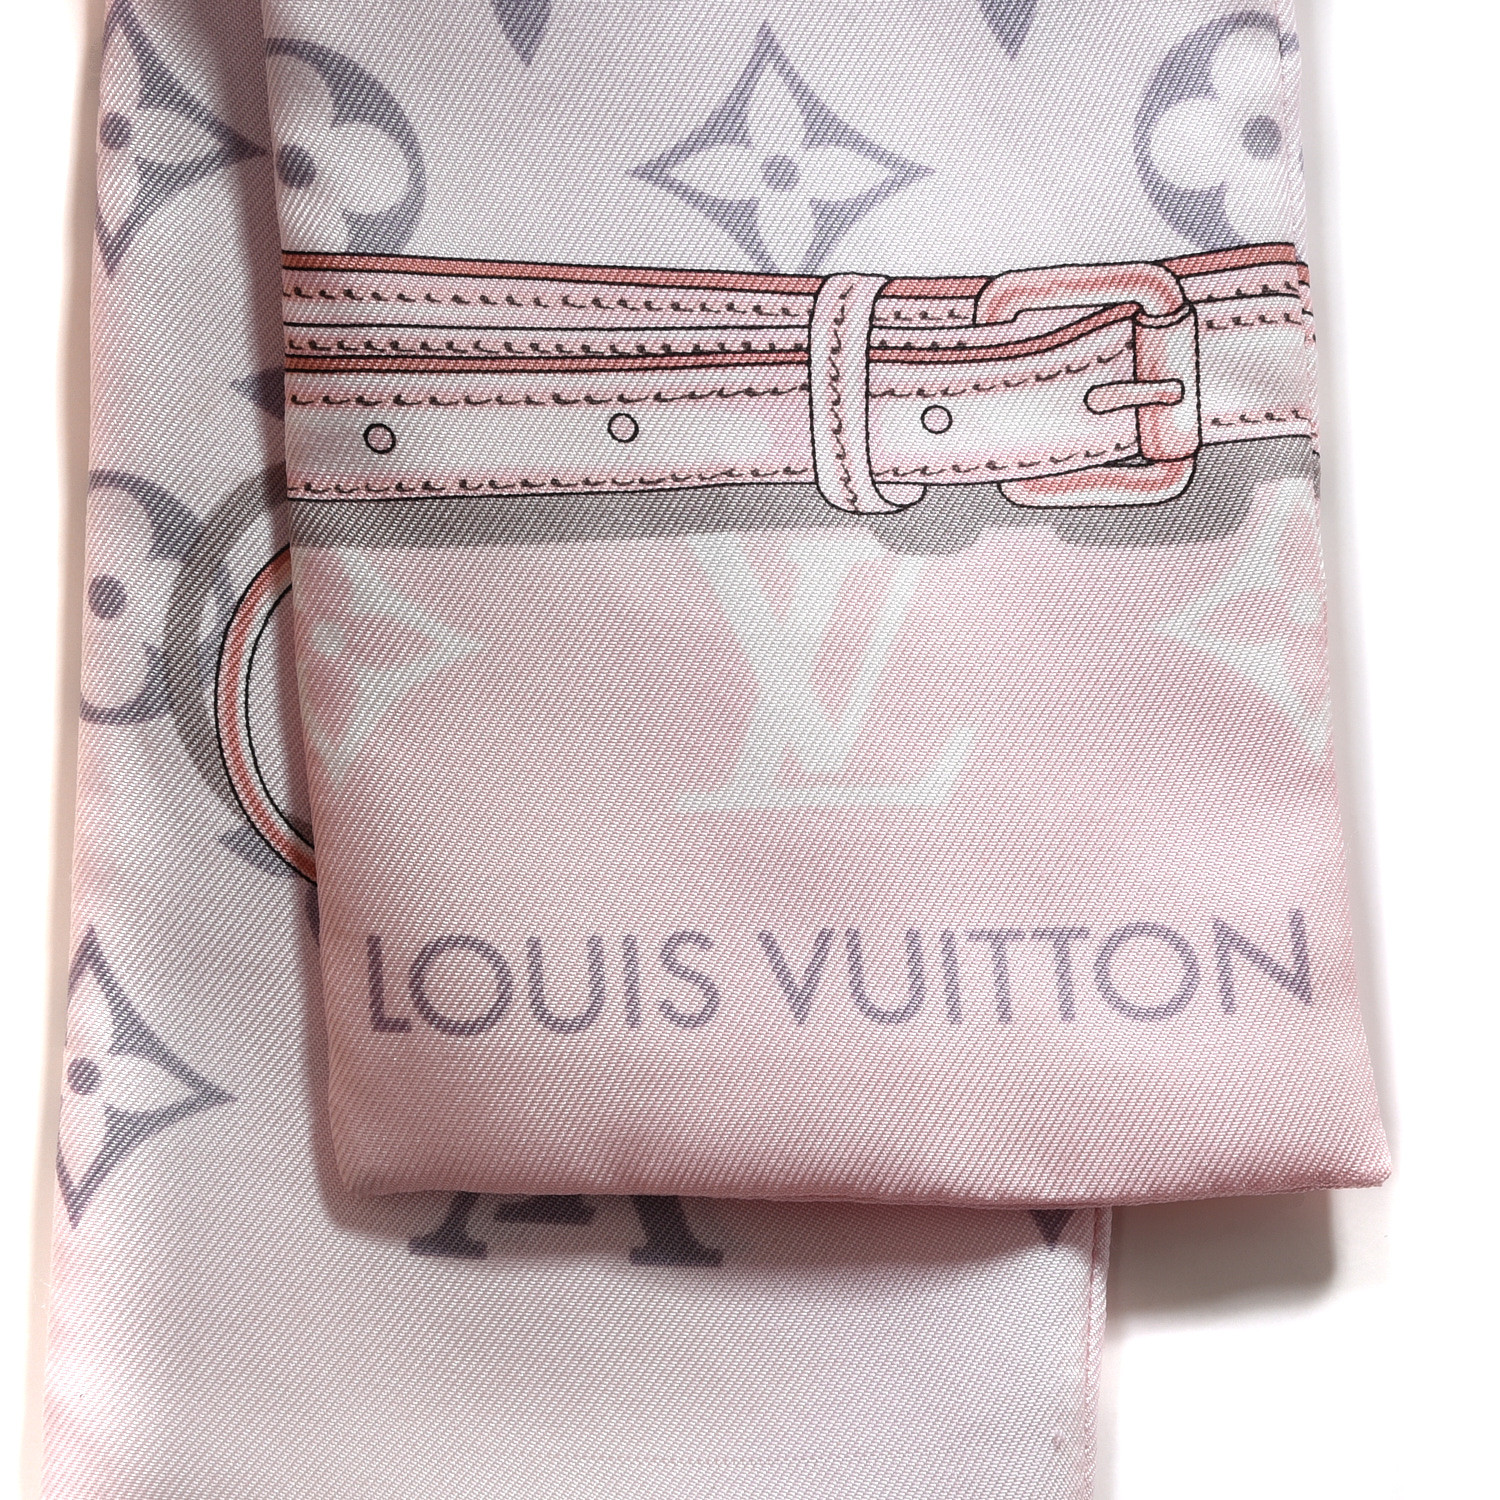 Louis Vuitton Monogram Confidential Bandeau (M70637, M78655, M78656)